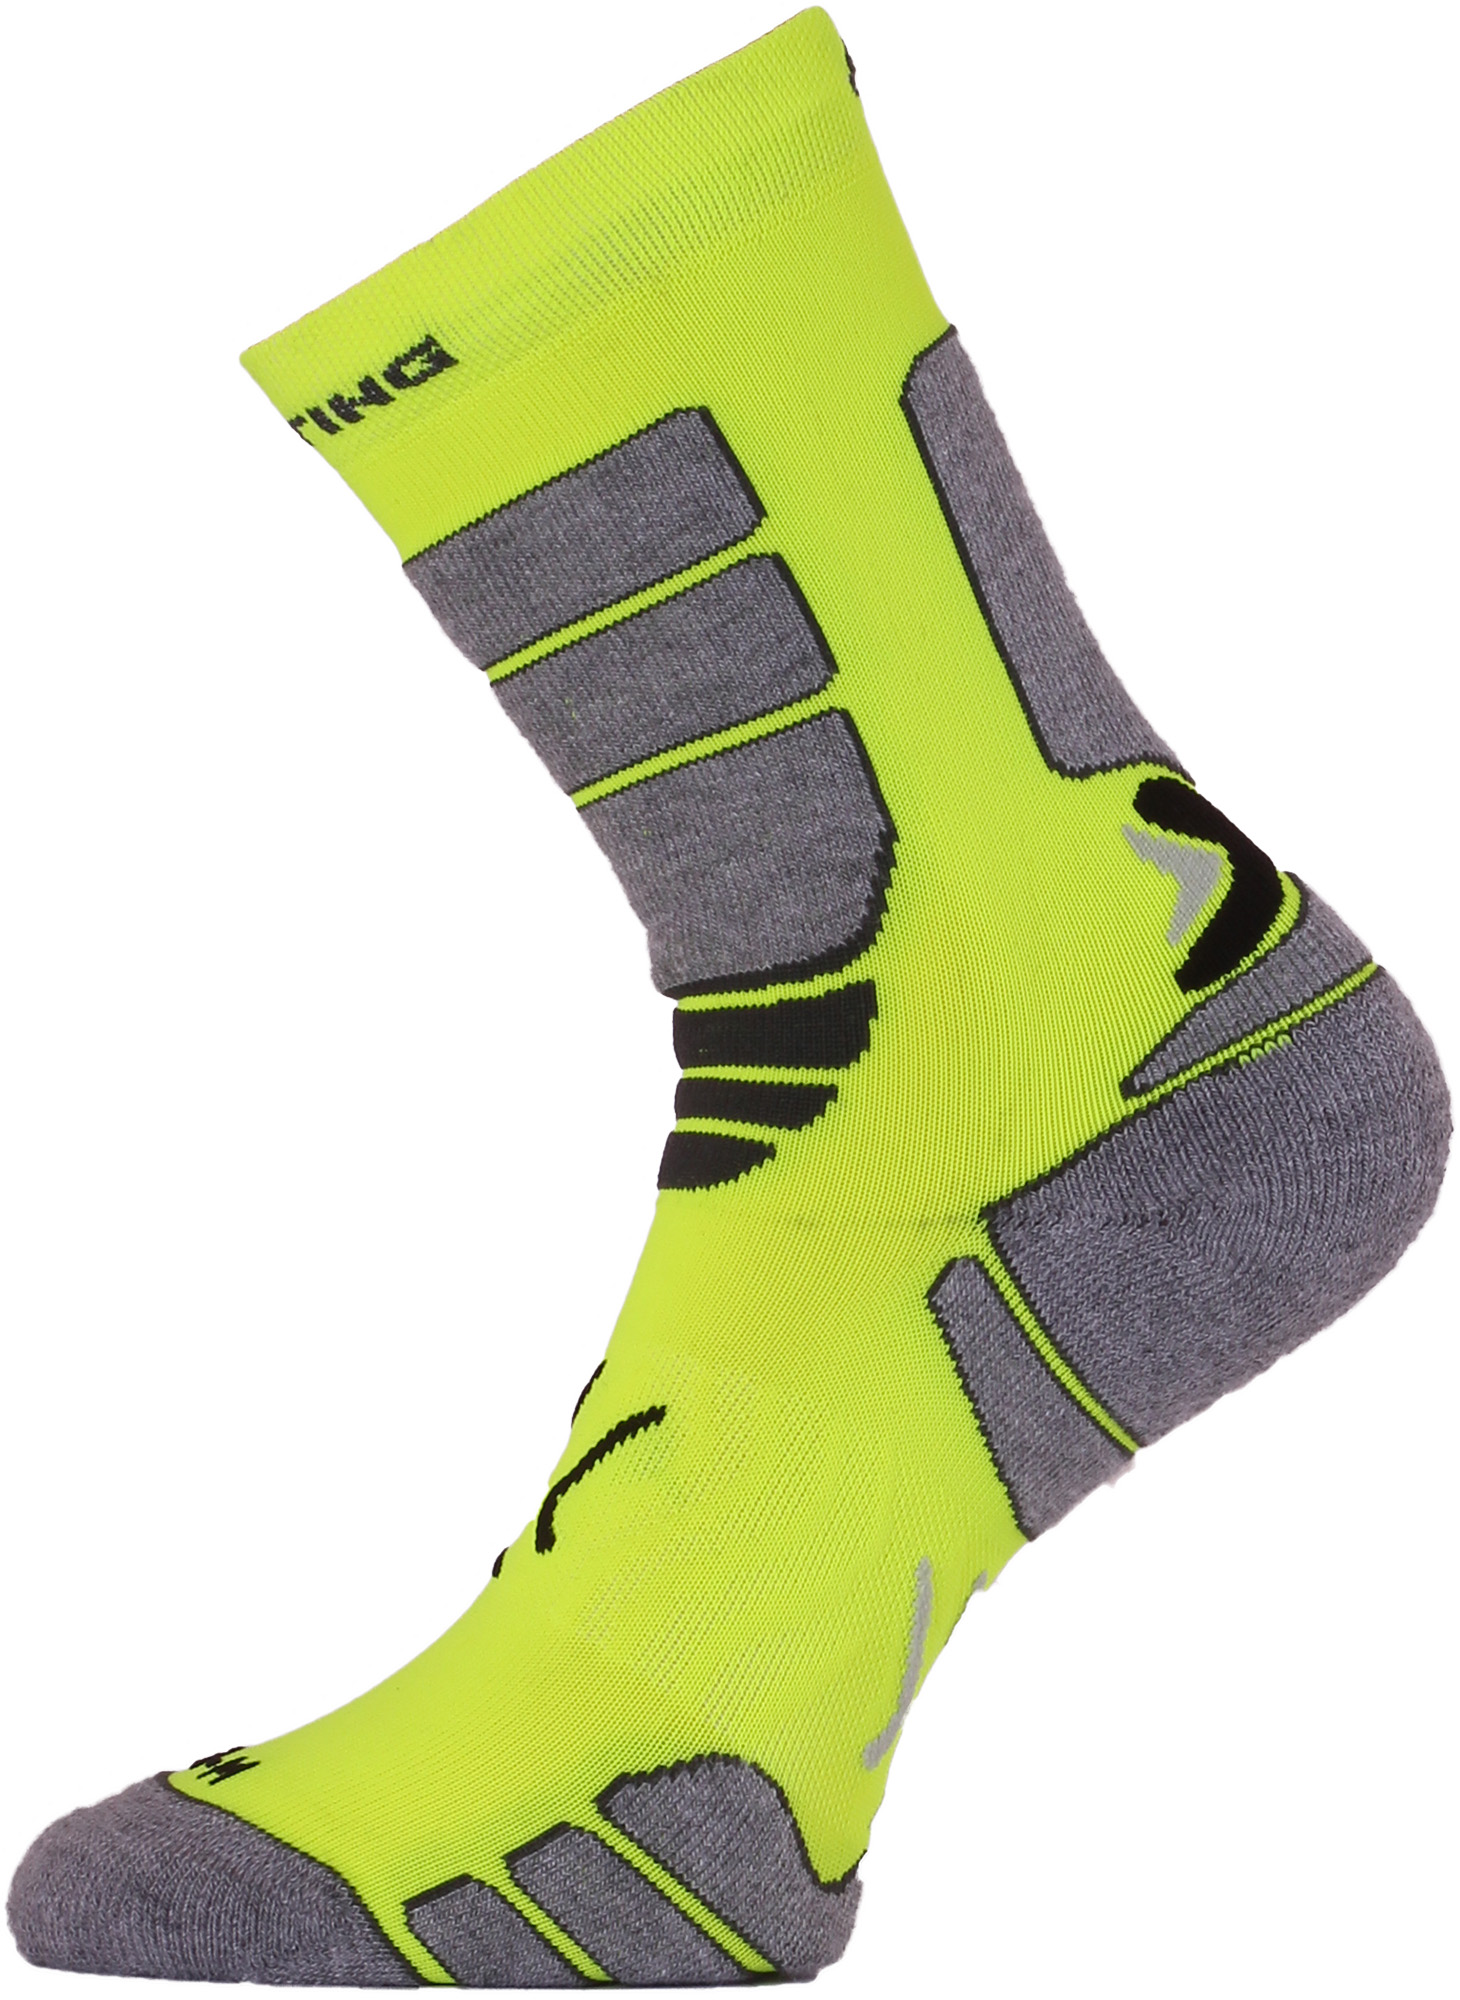 E-shop Lasting ILR 108 žlutá Středně dlouhá inlinová ponožka